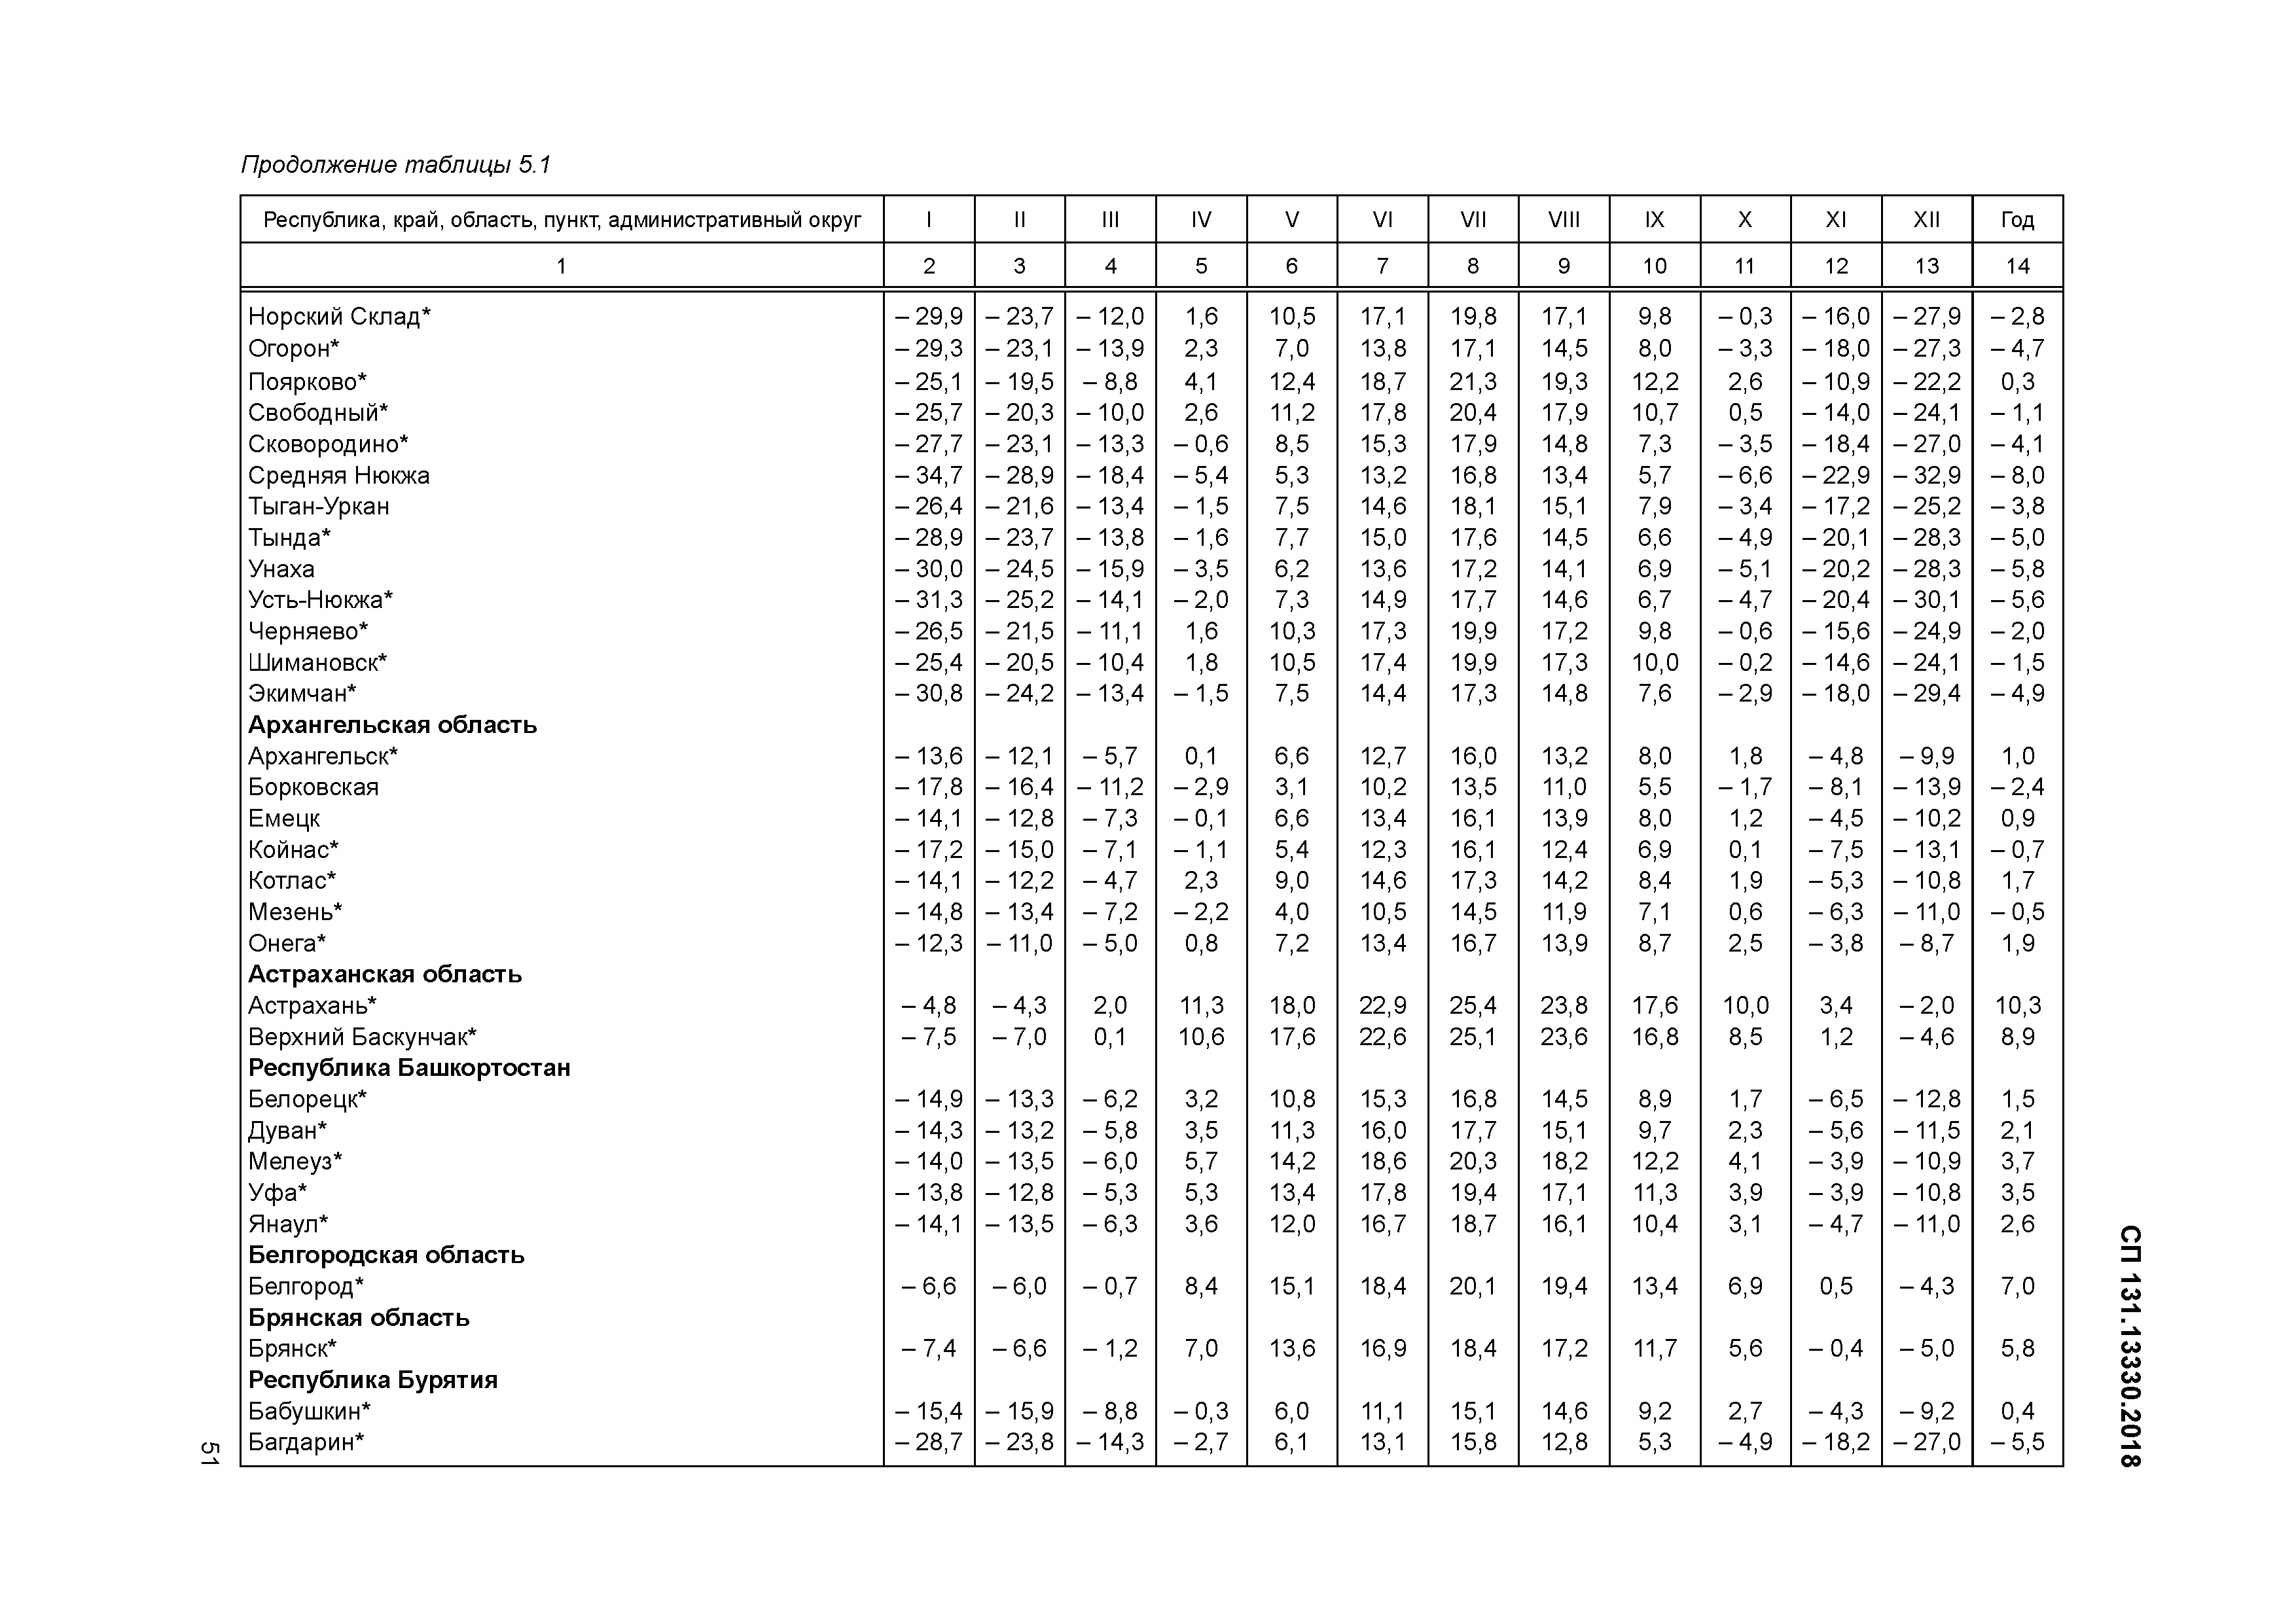 СП строительная климатология таблица 5.1